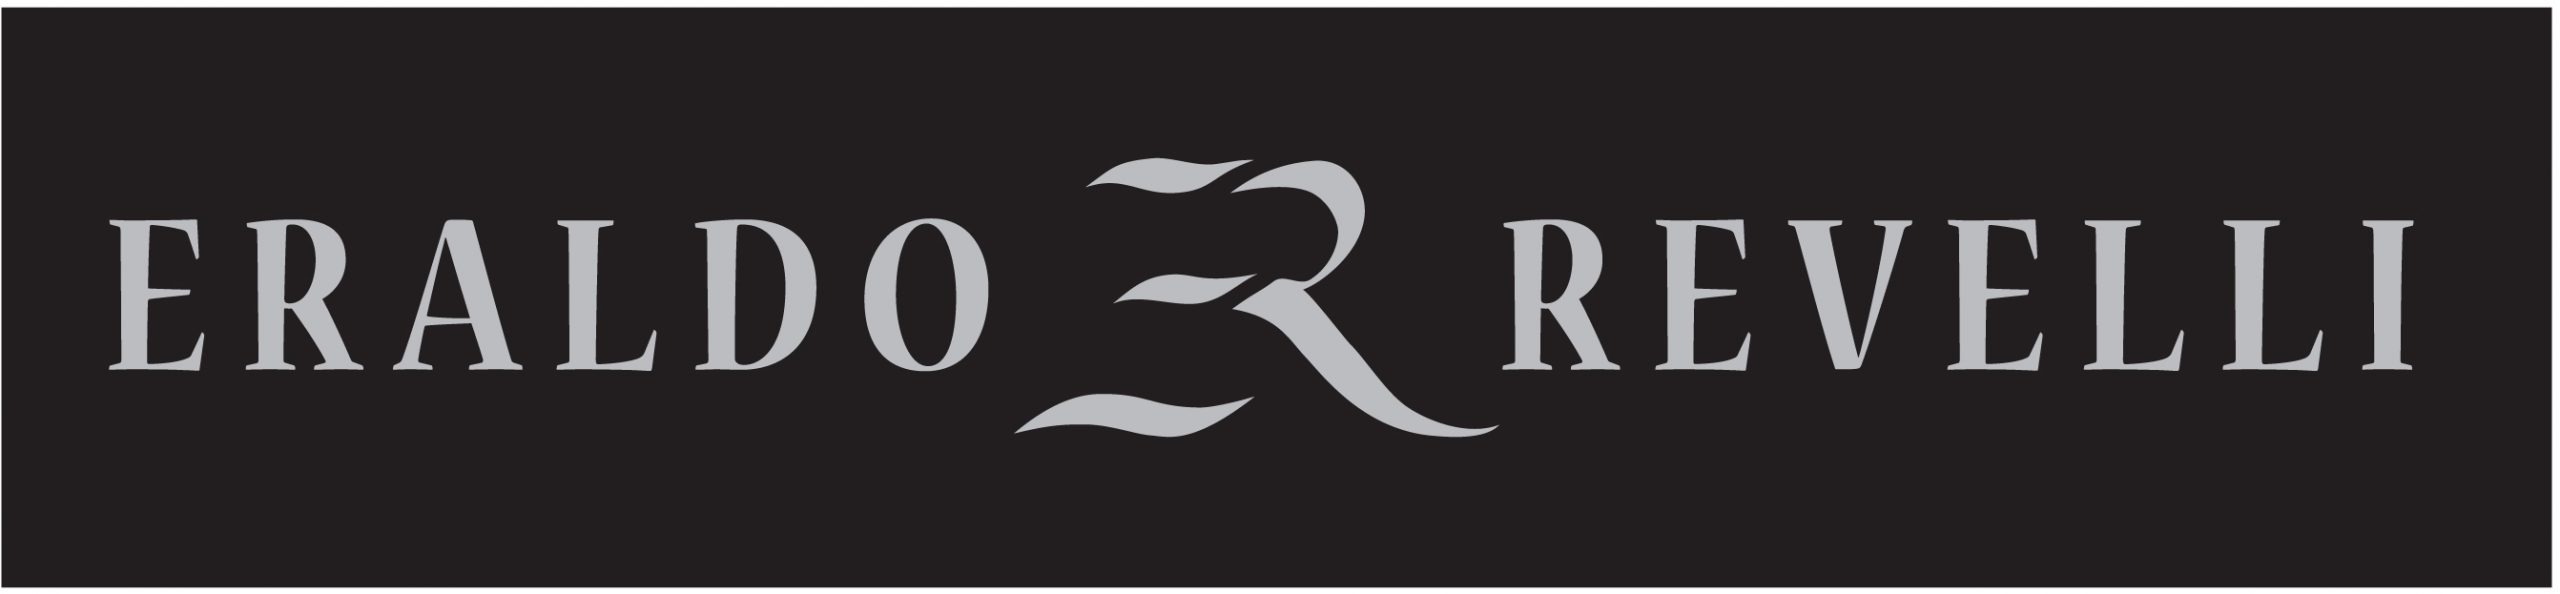 Eraldo Revelli logo